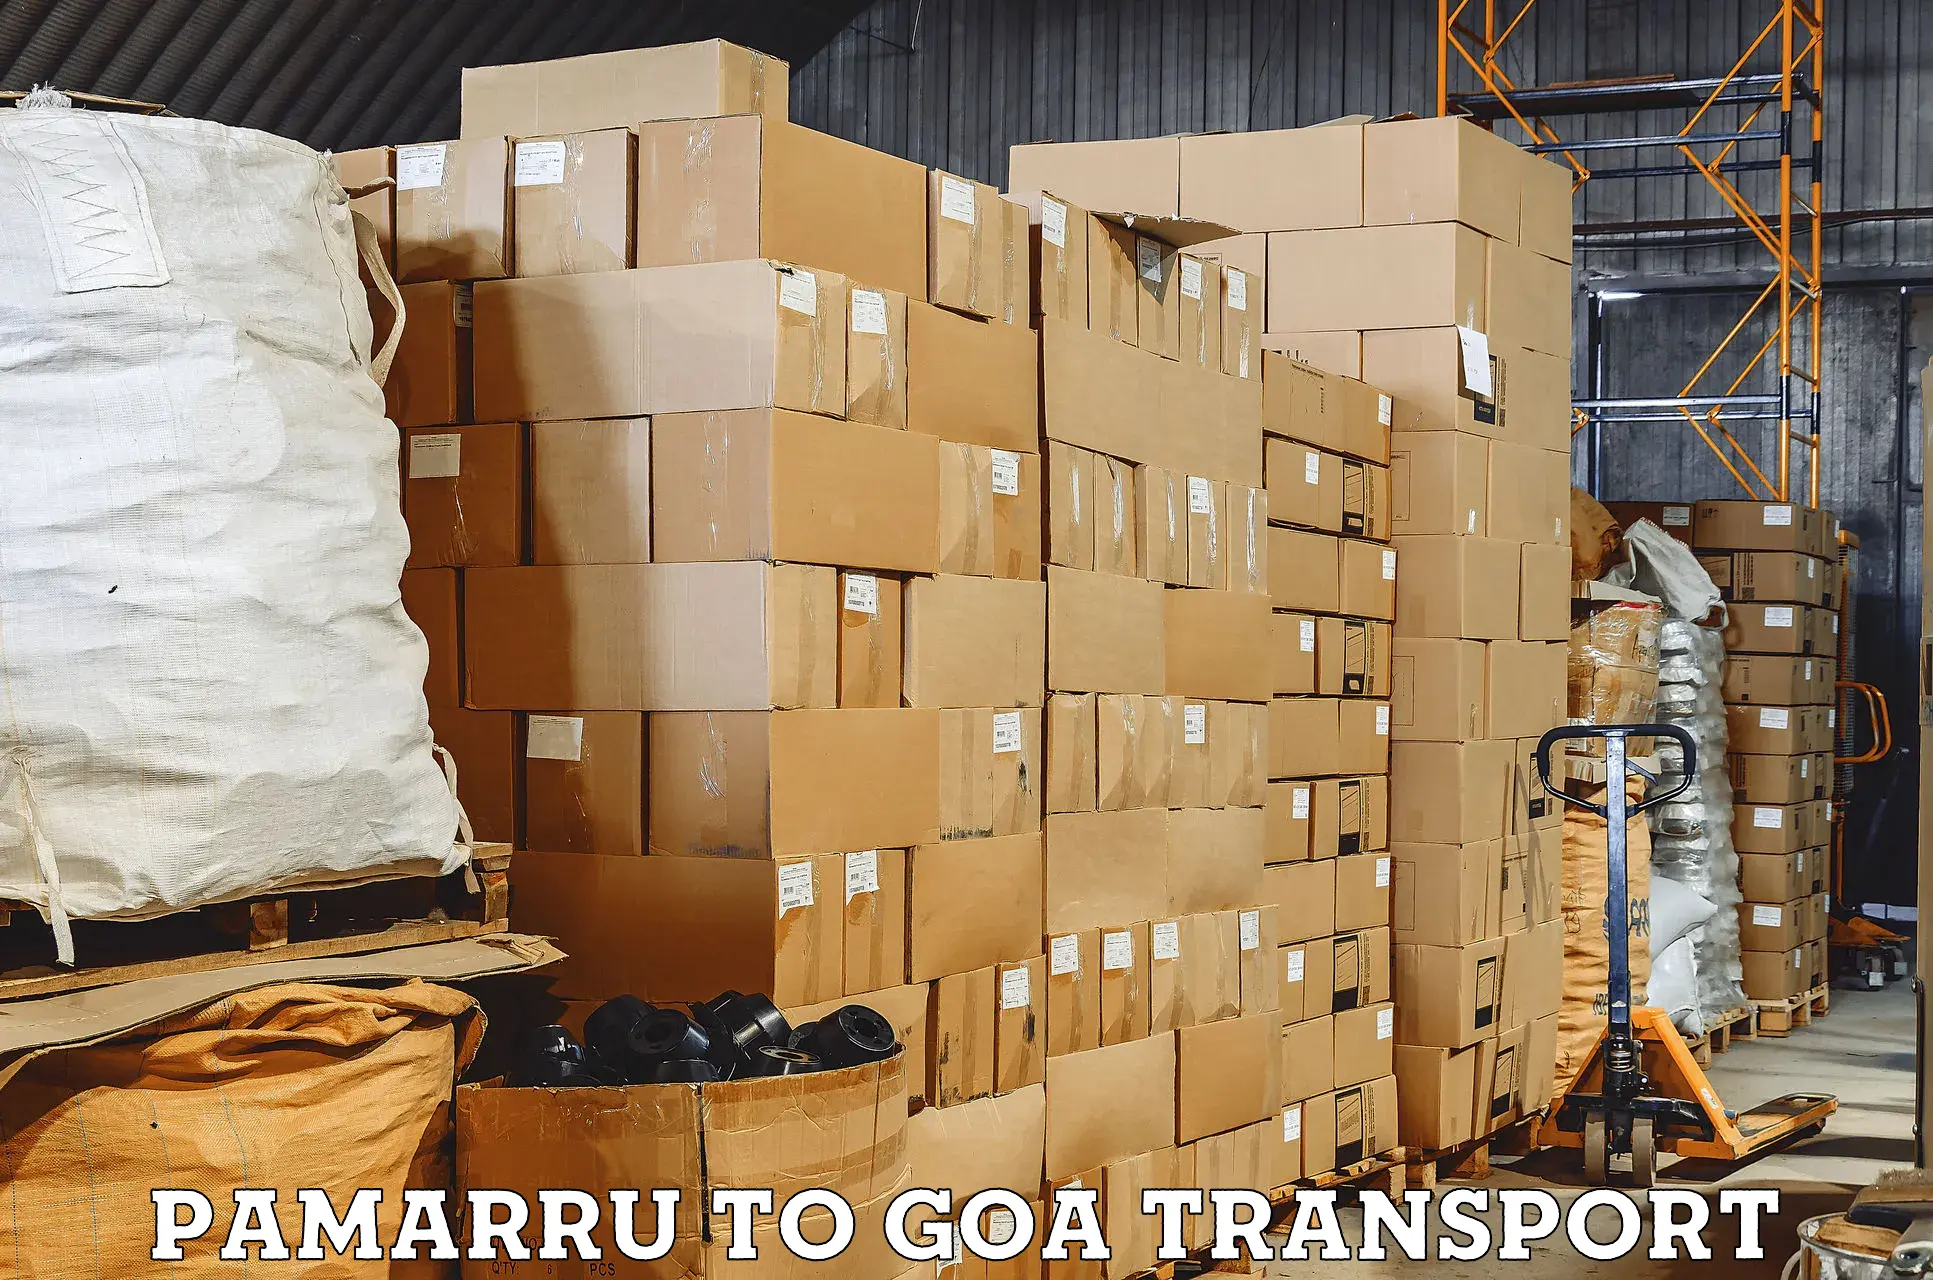 Vehicle transport services in Pamarru to Panjim